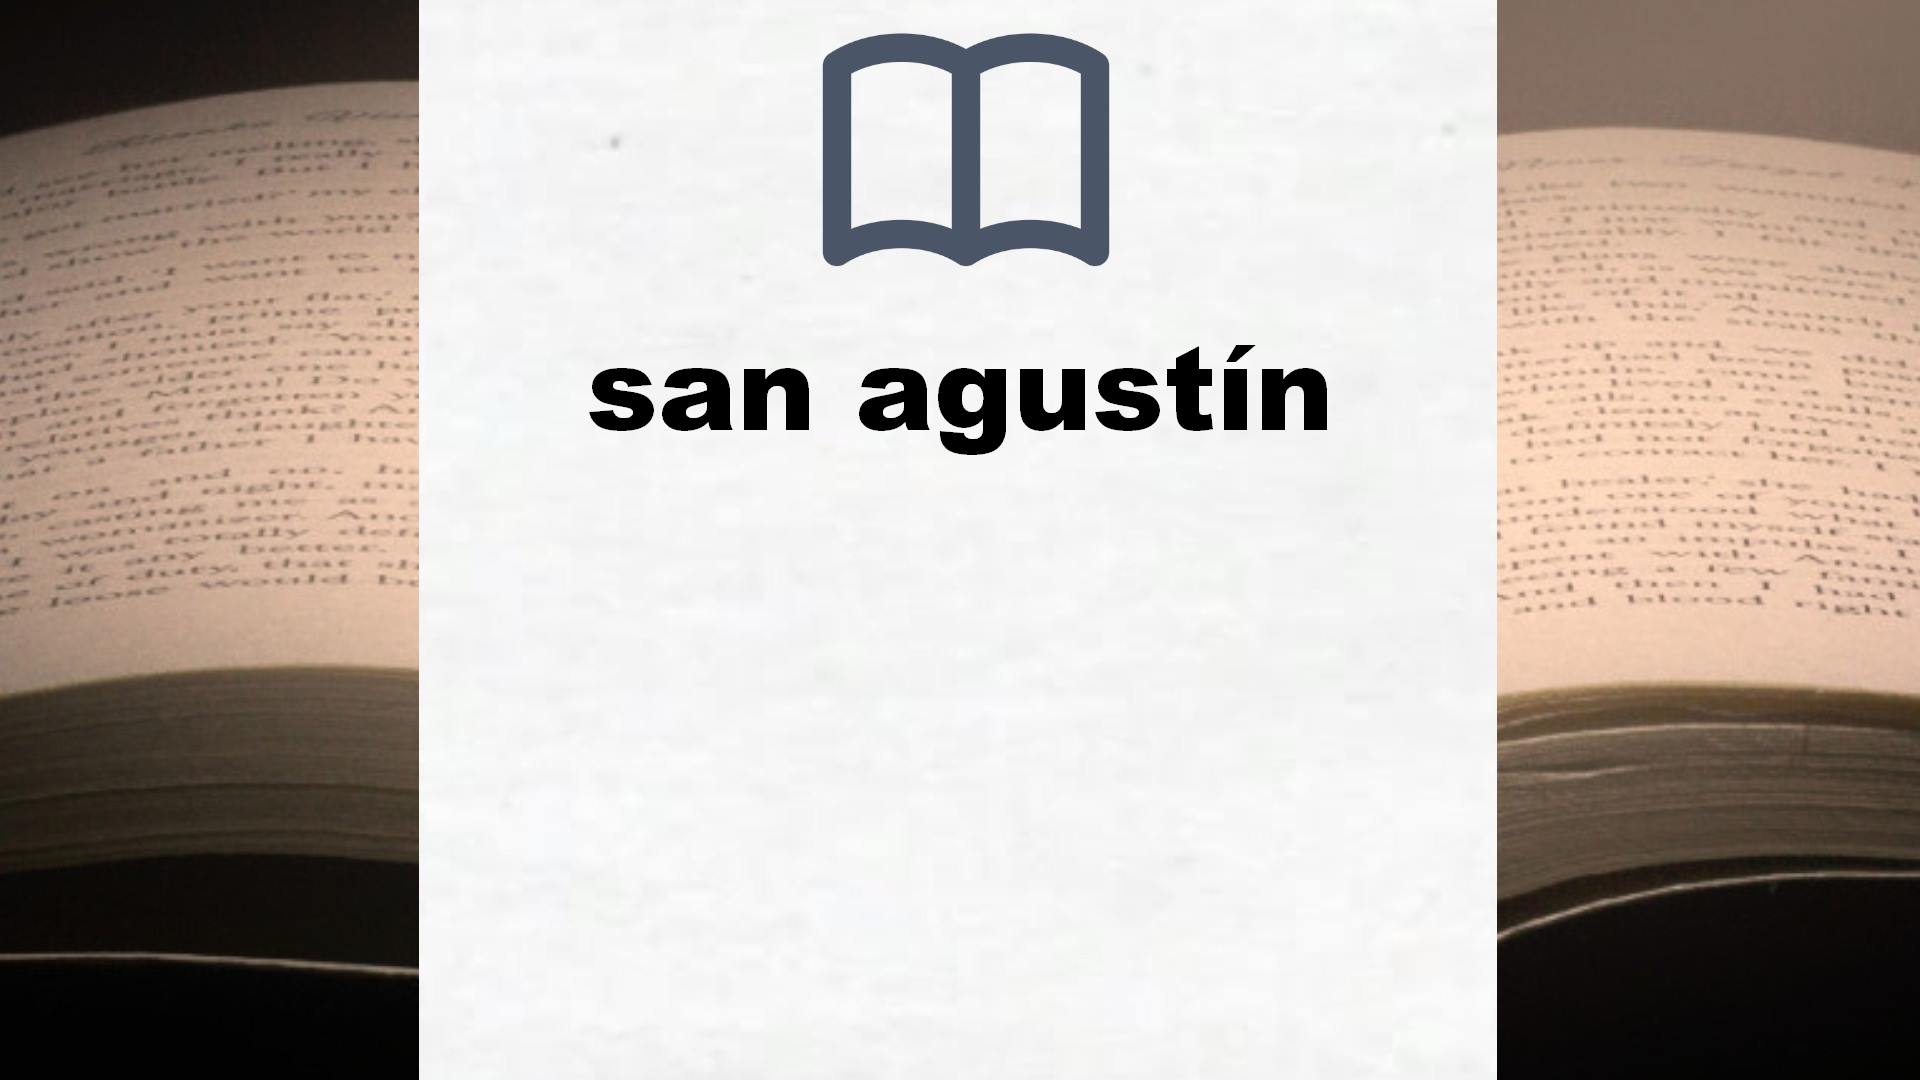 Libros sobre san agustín